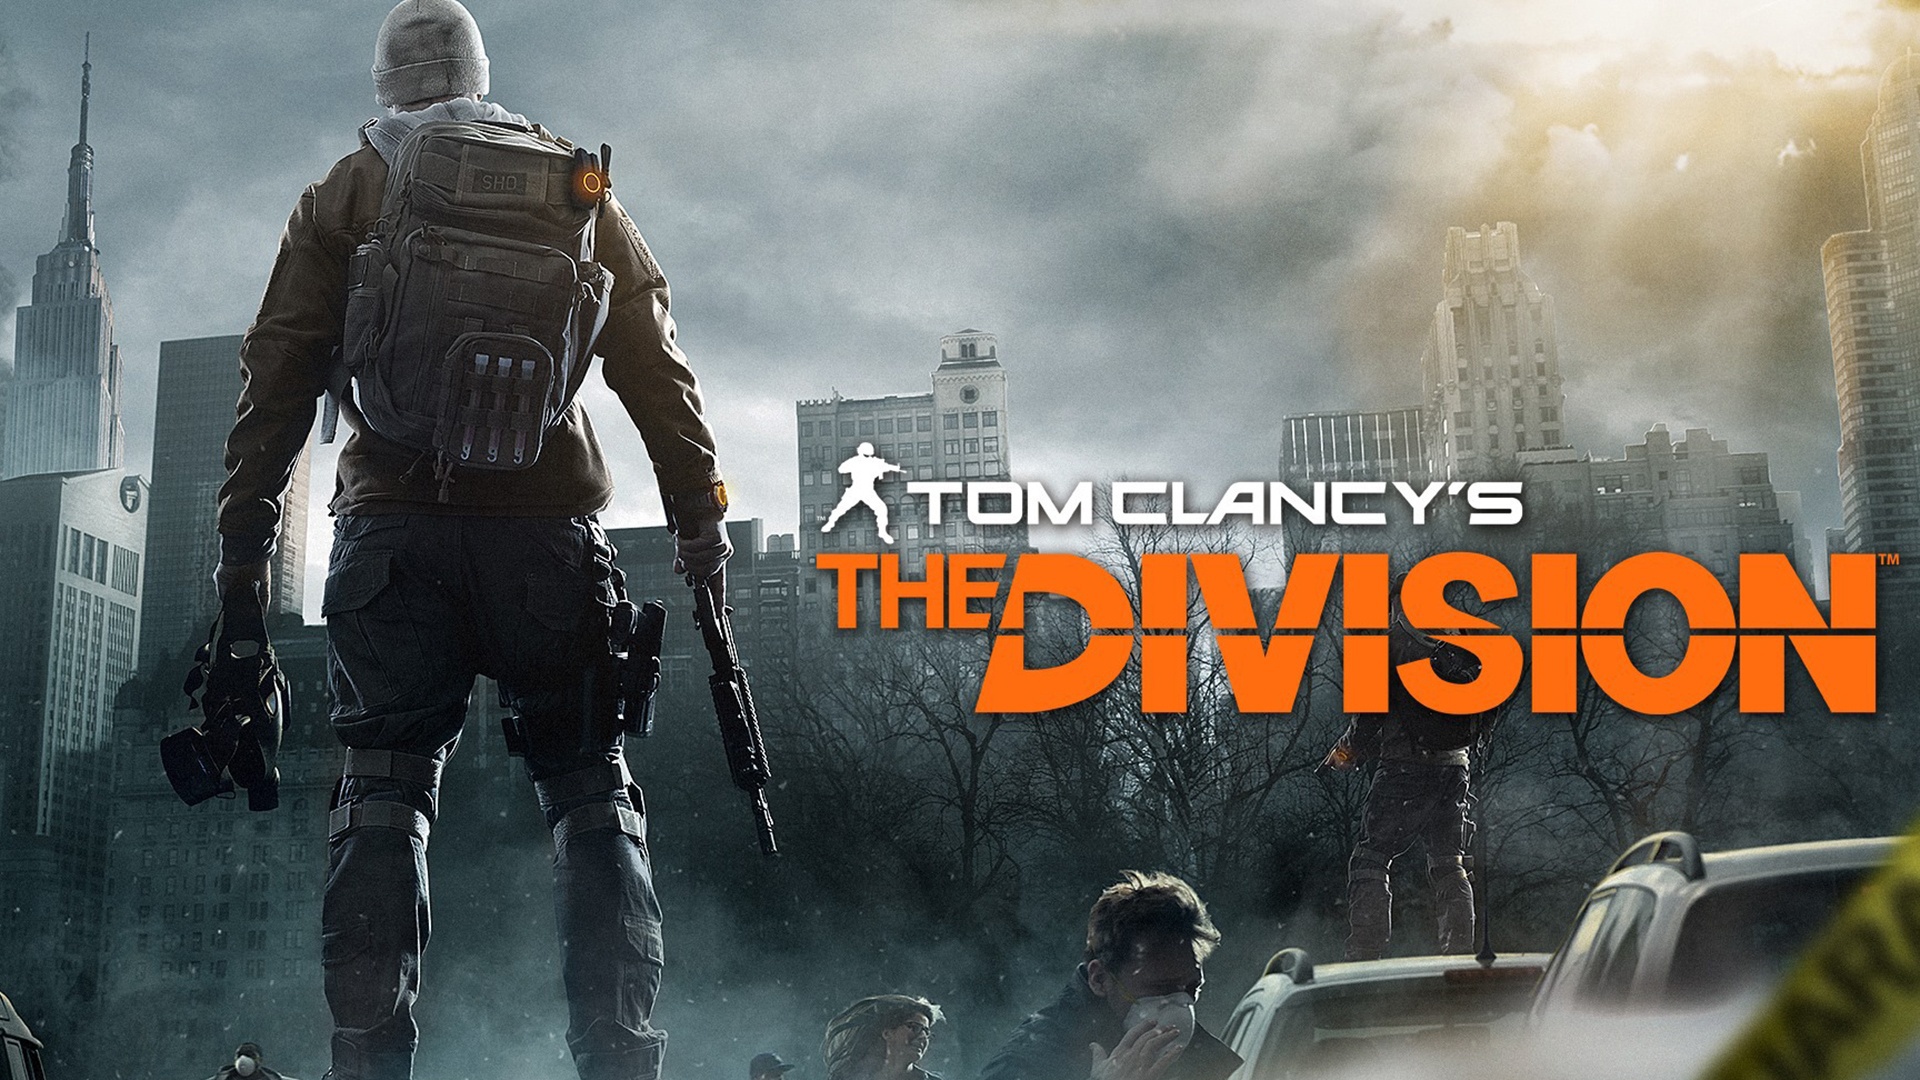 NVIDIAs neuen Game-Ready-Treiber für Tom Clancy’s The Division jetzt downloaden